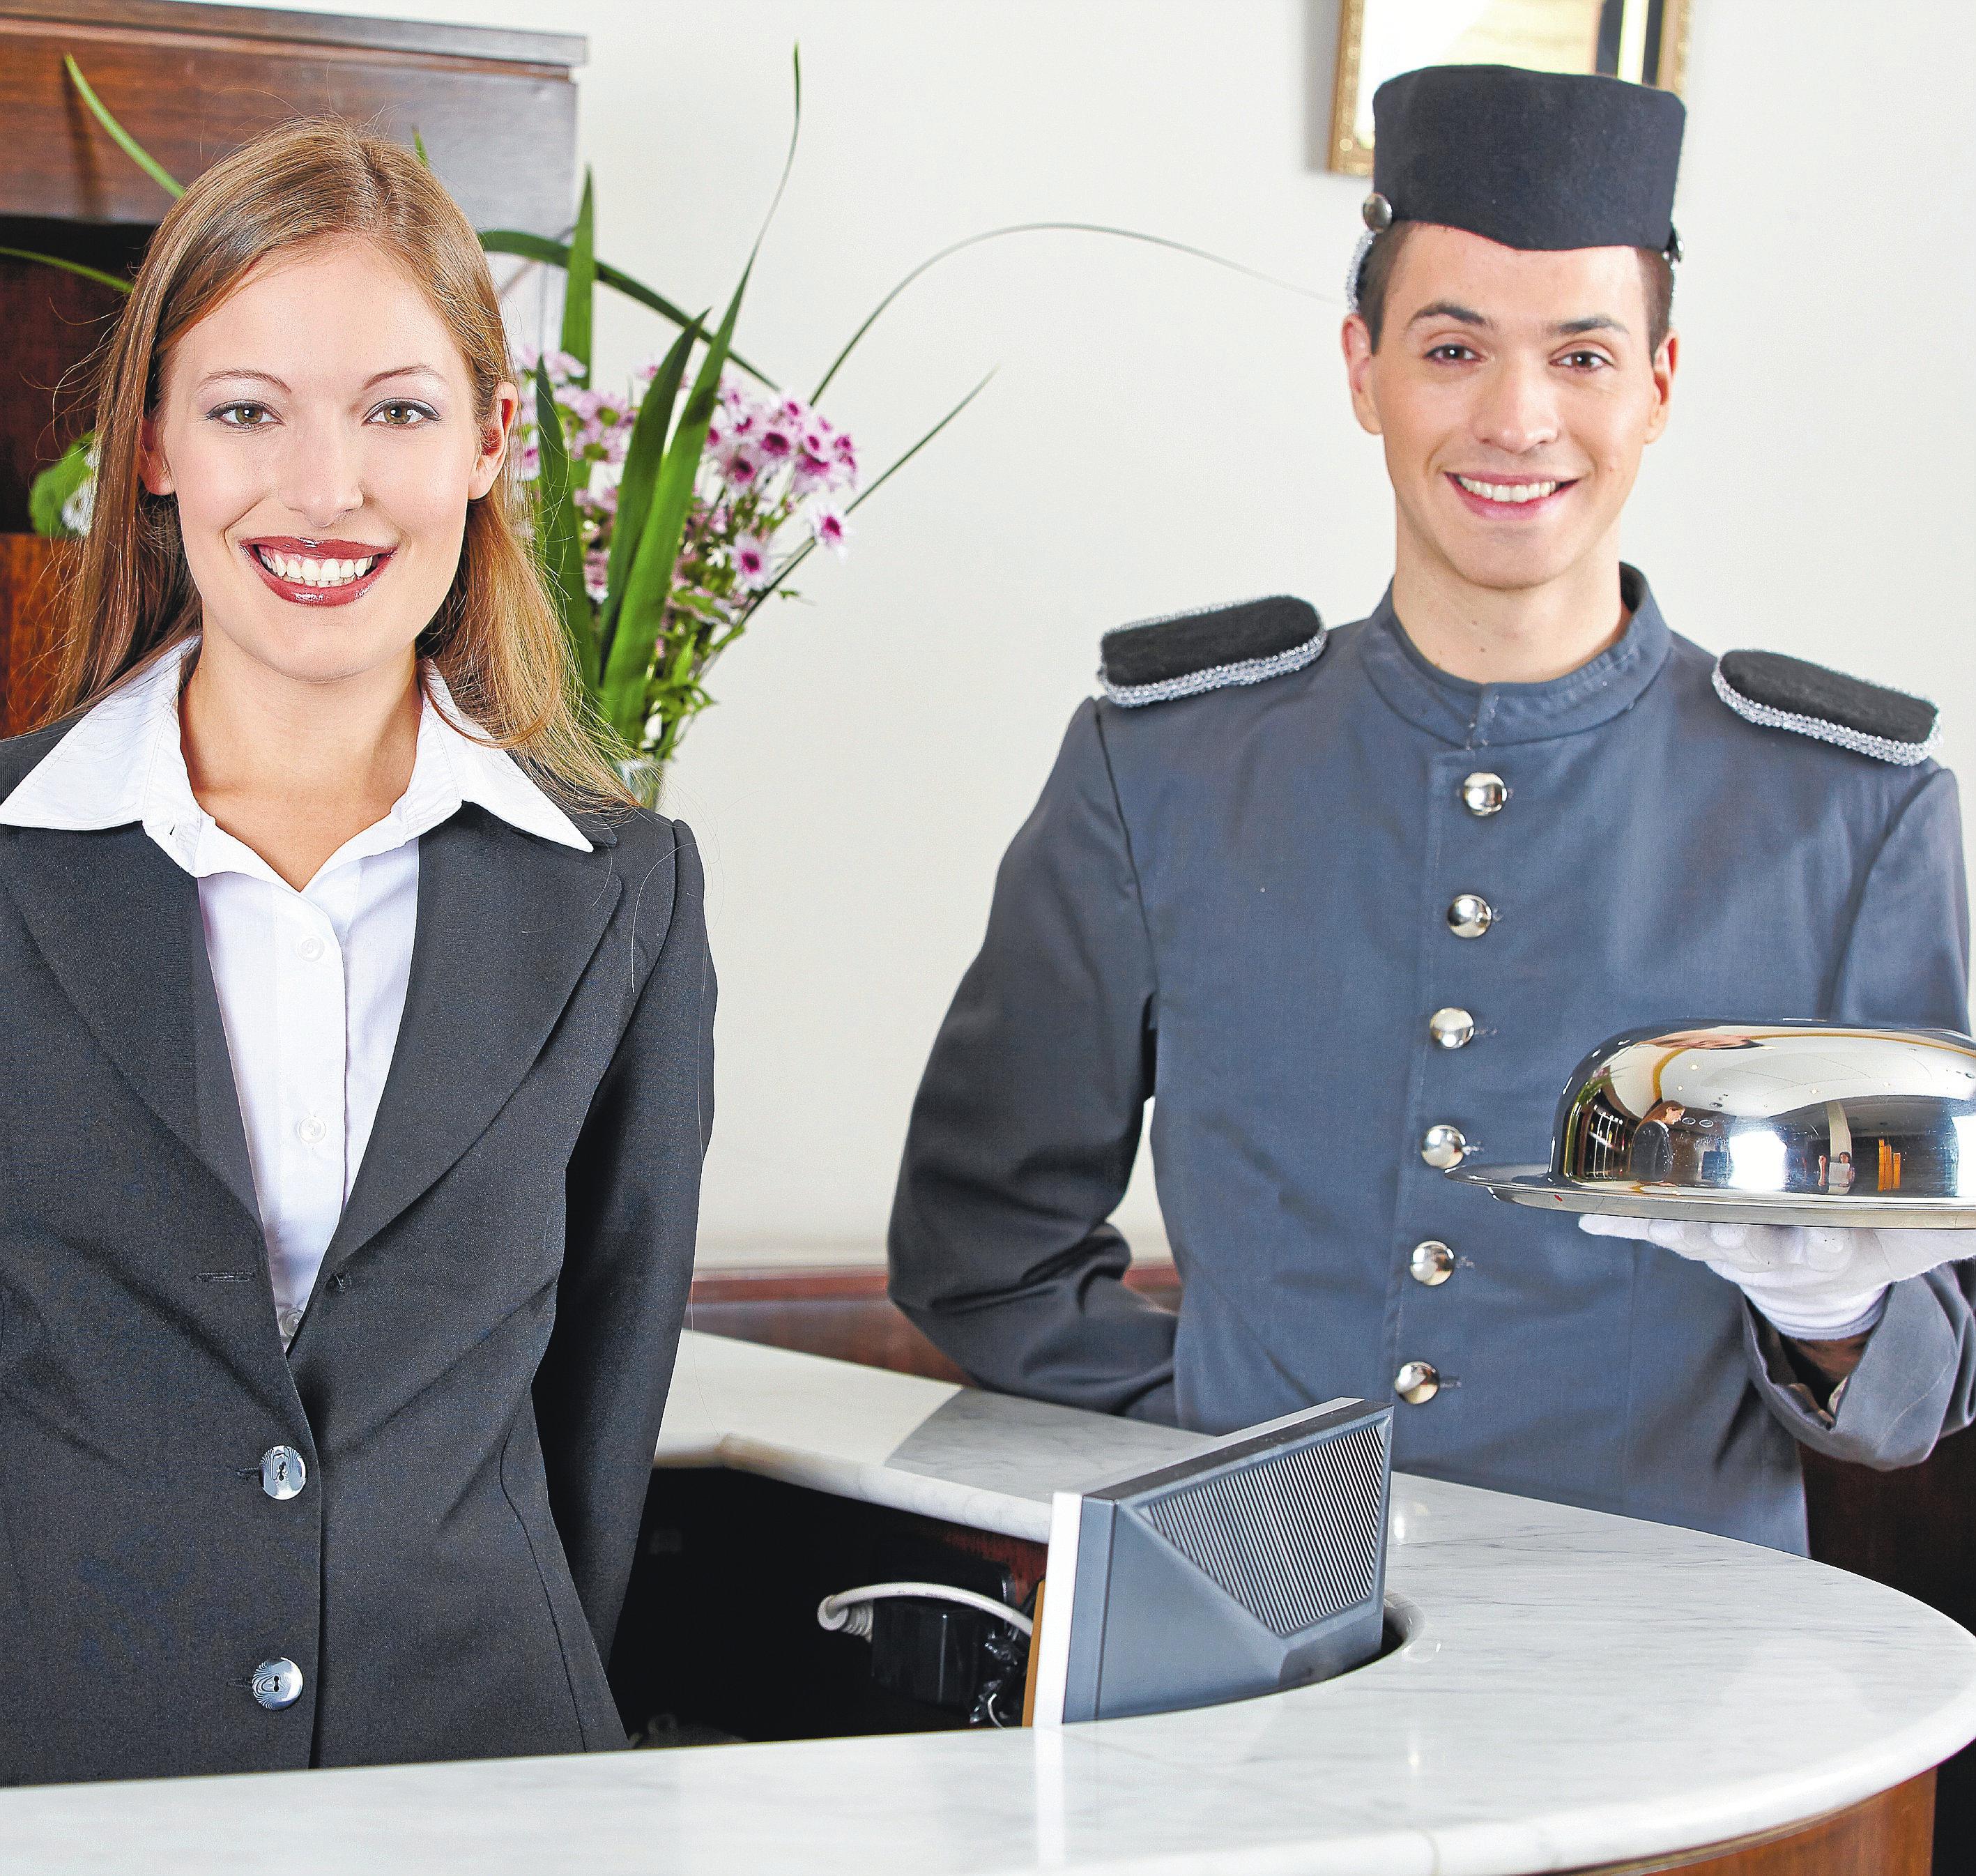 Hotelfachleute betreuen ihre Gäste von der Ankunft bis zur Abreise. © Fotolia